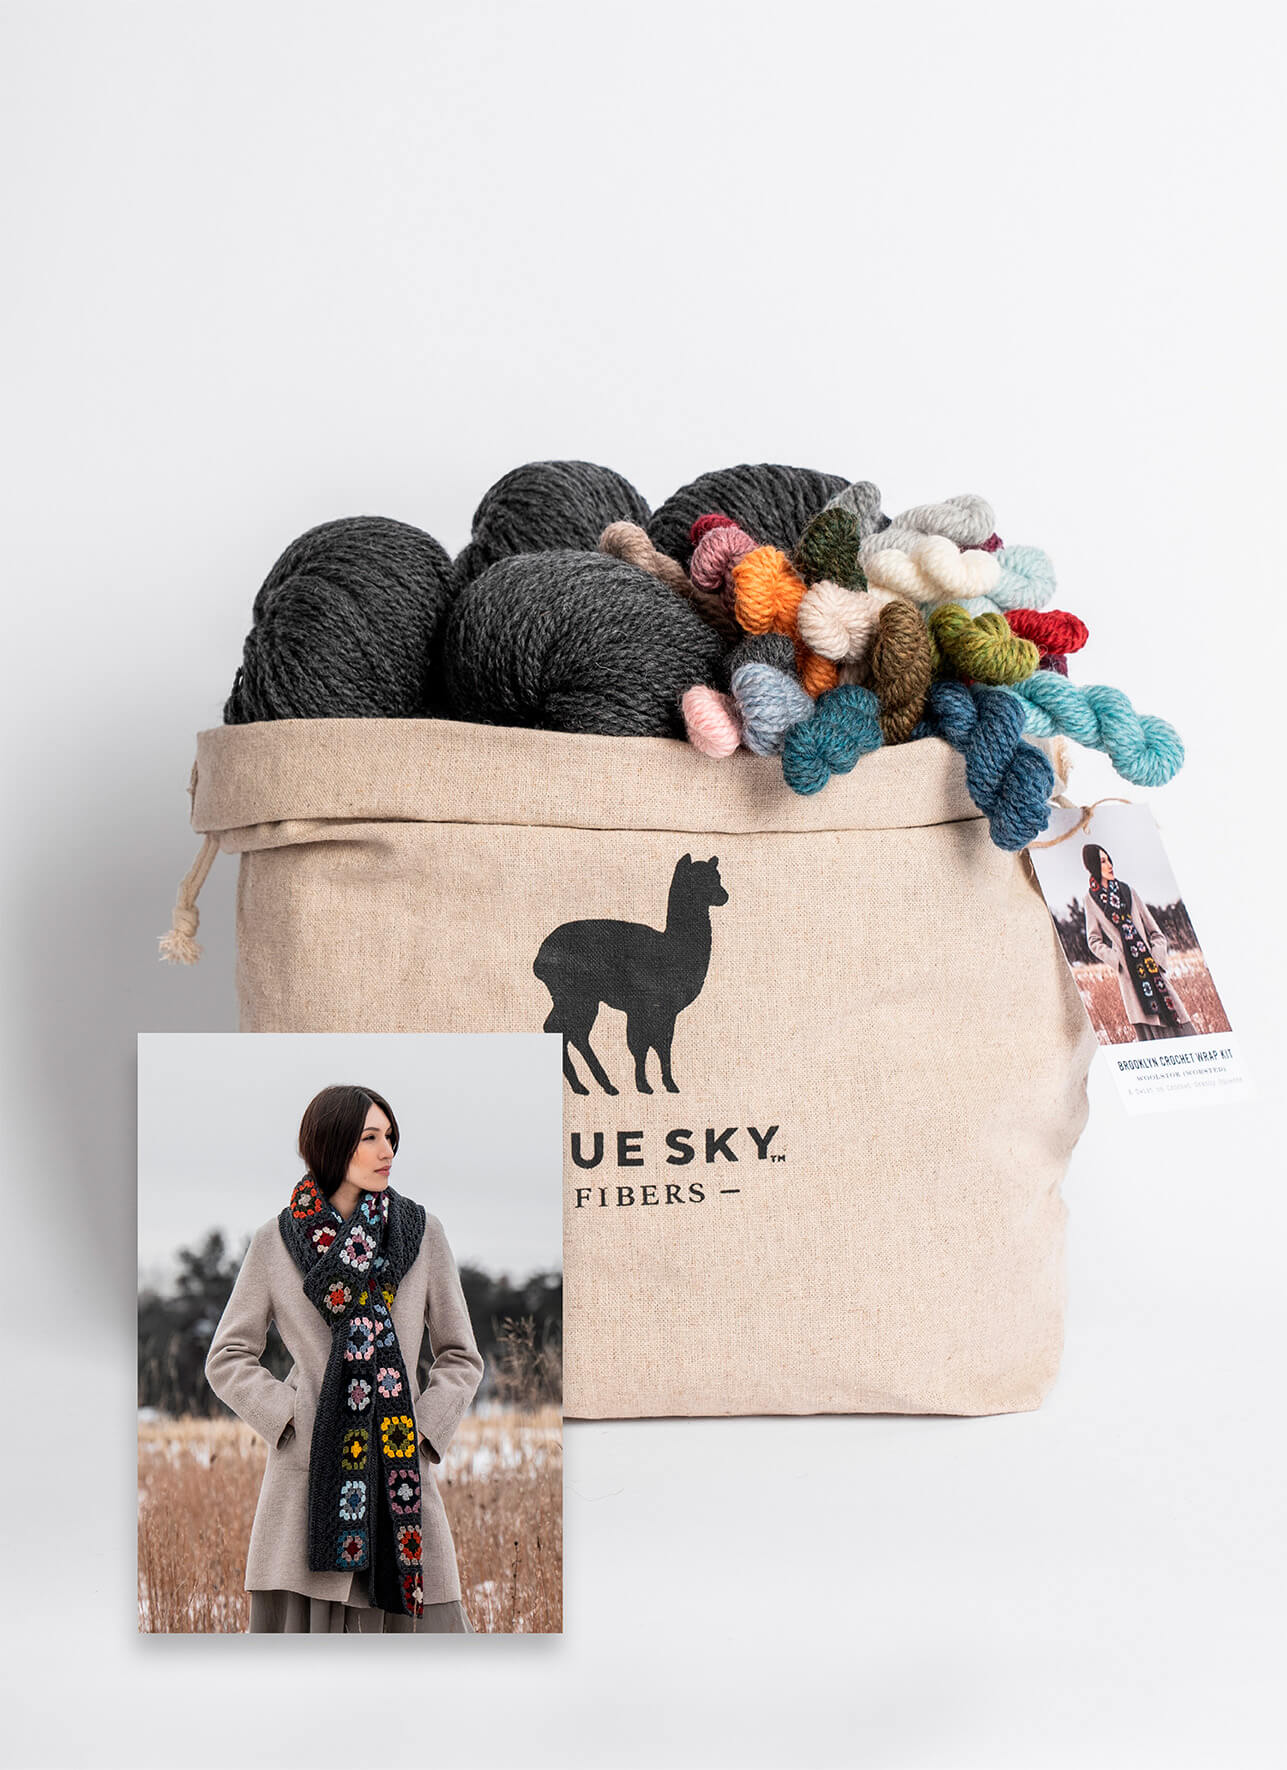 Brooklyn Crochet Wrap Kit from Blue Sky Fibers